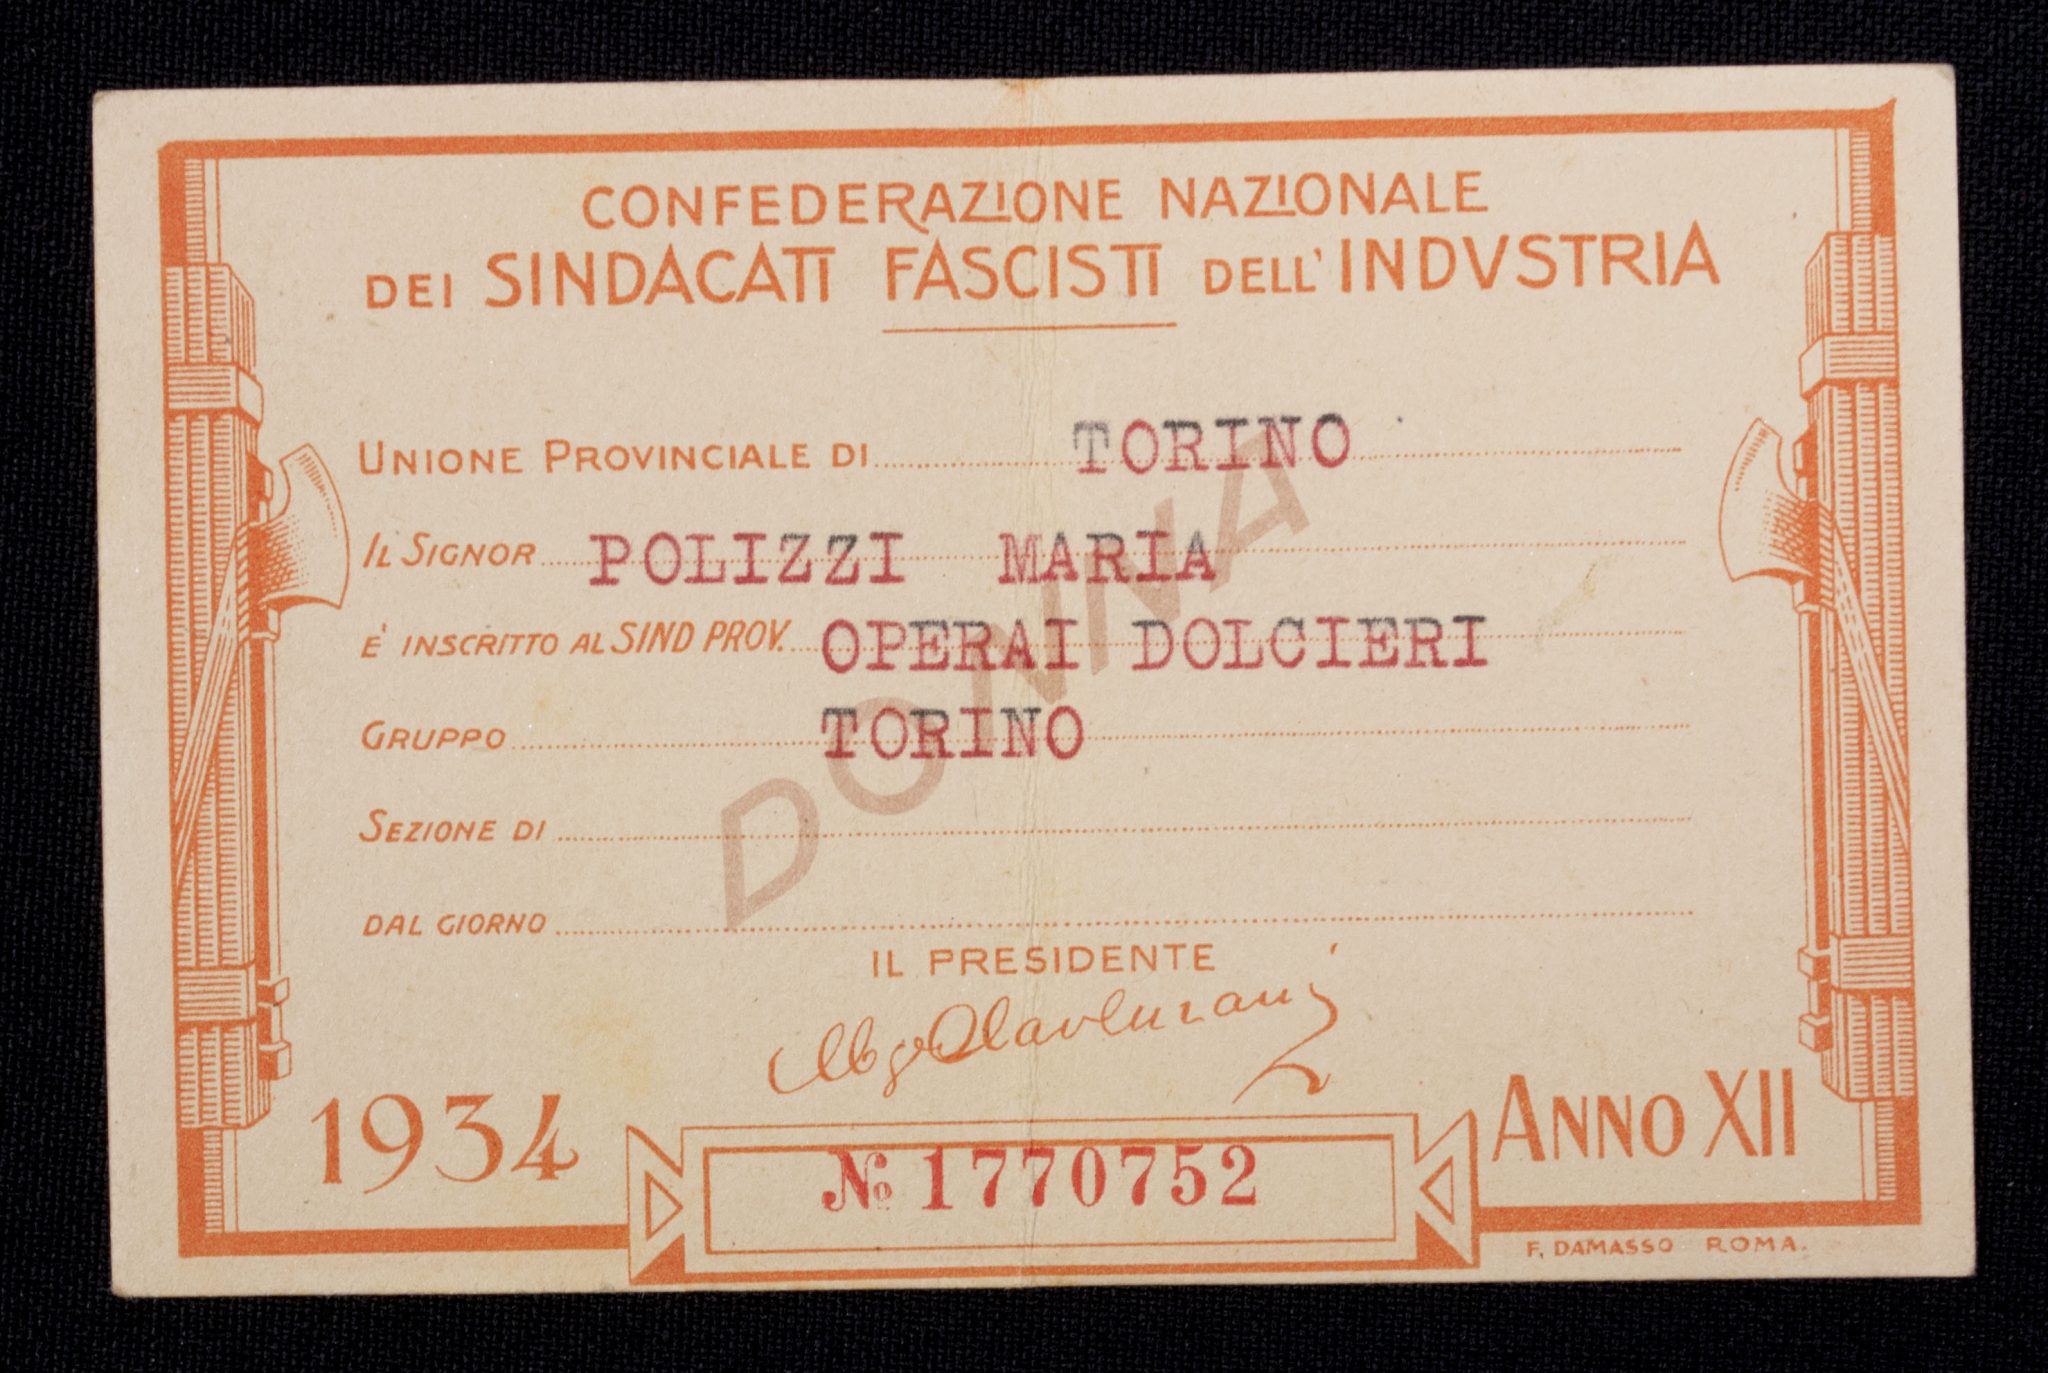 (Italy) Confederazione Nazionale dei Sindacati Fascisti Dell'Industria 1934